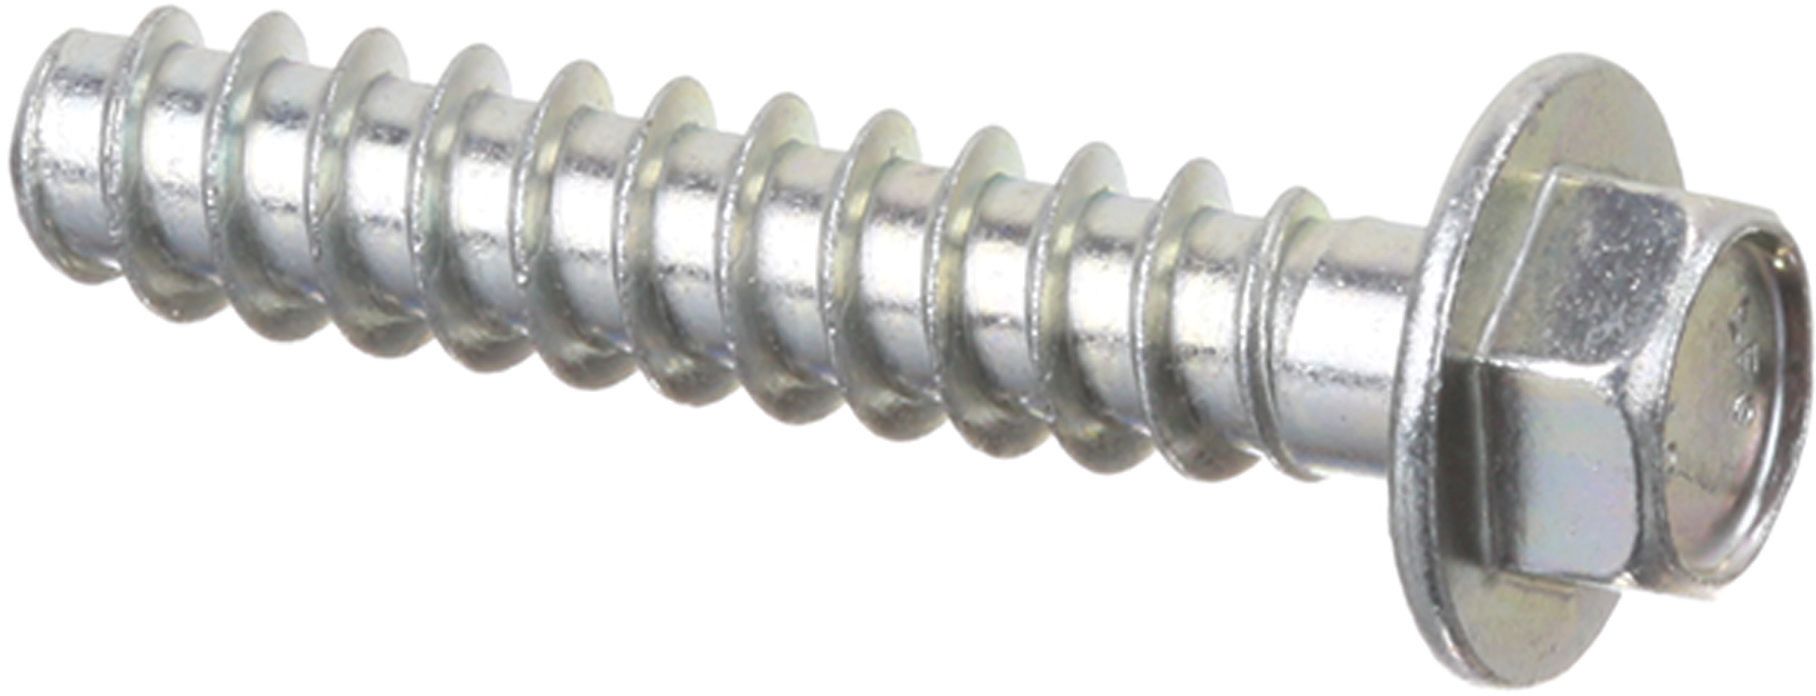 Schraube Sechskant-Blechschraube M8 - 40mm für 10mm Gabelschlüssel (KD-10007126) von BSH